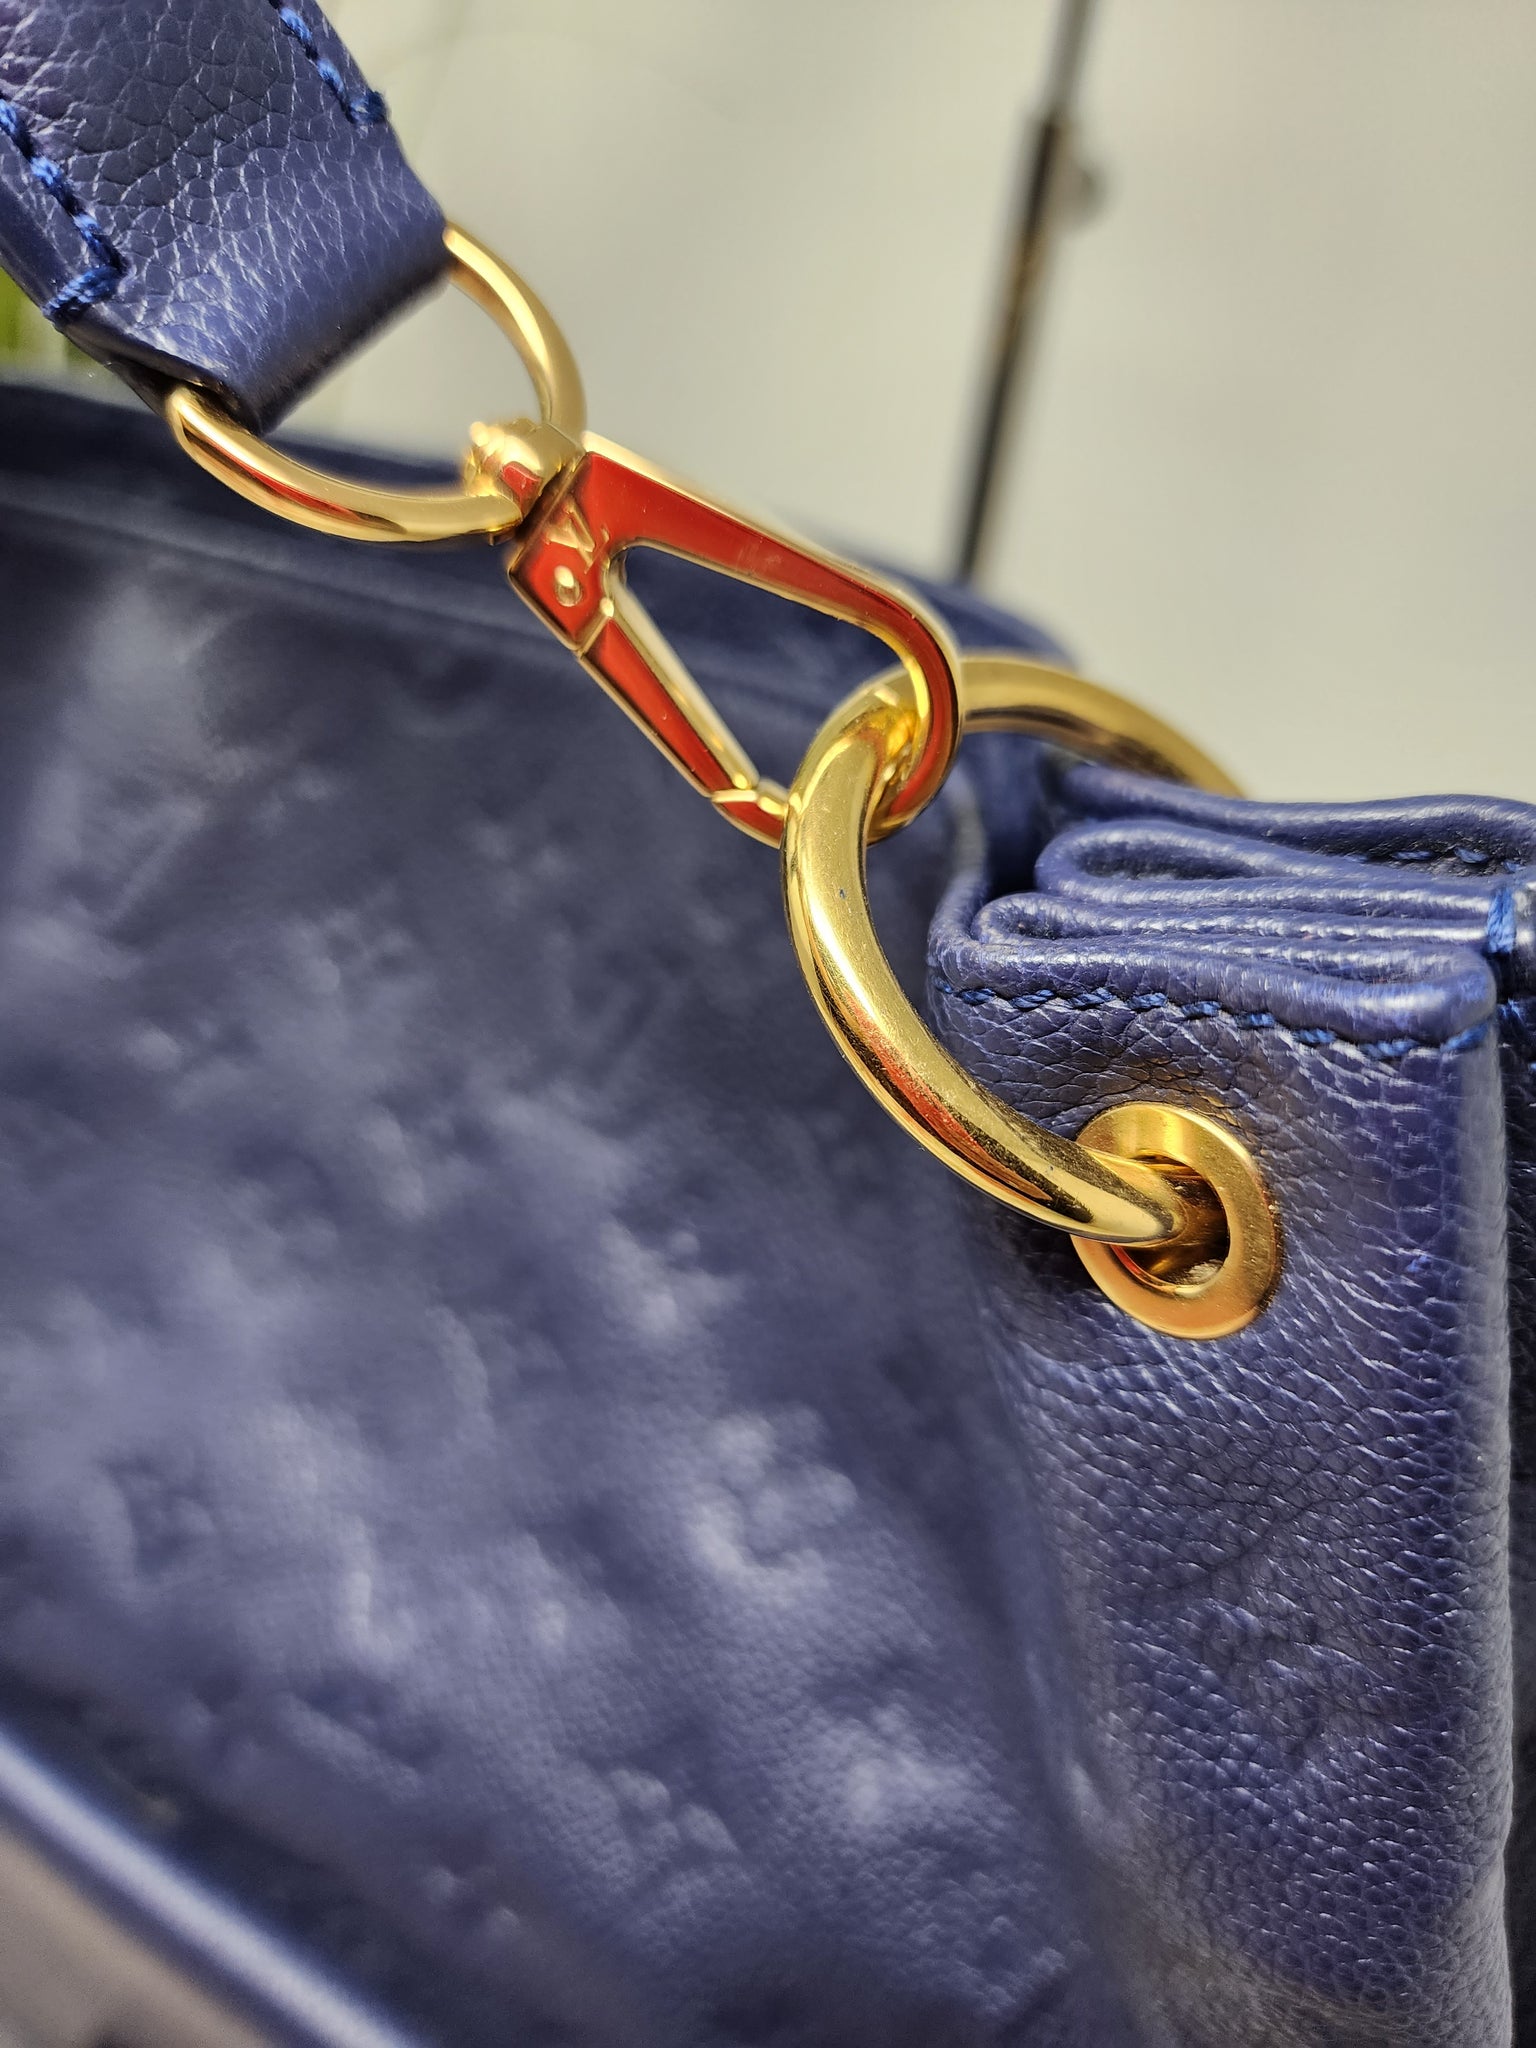 Louis Vuitton Metis Hobo- Empreinte Celeste Blue